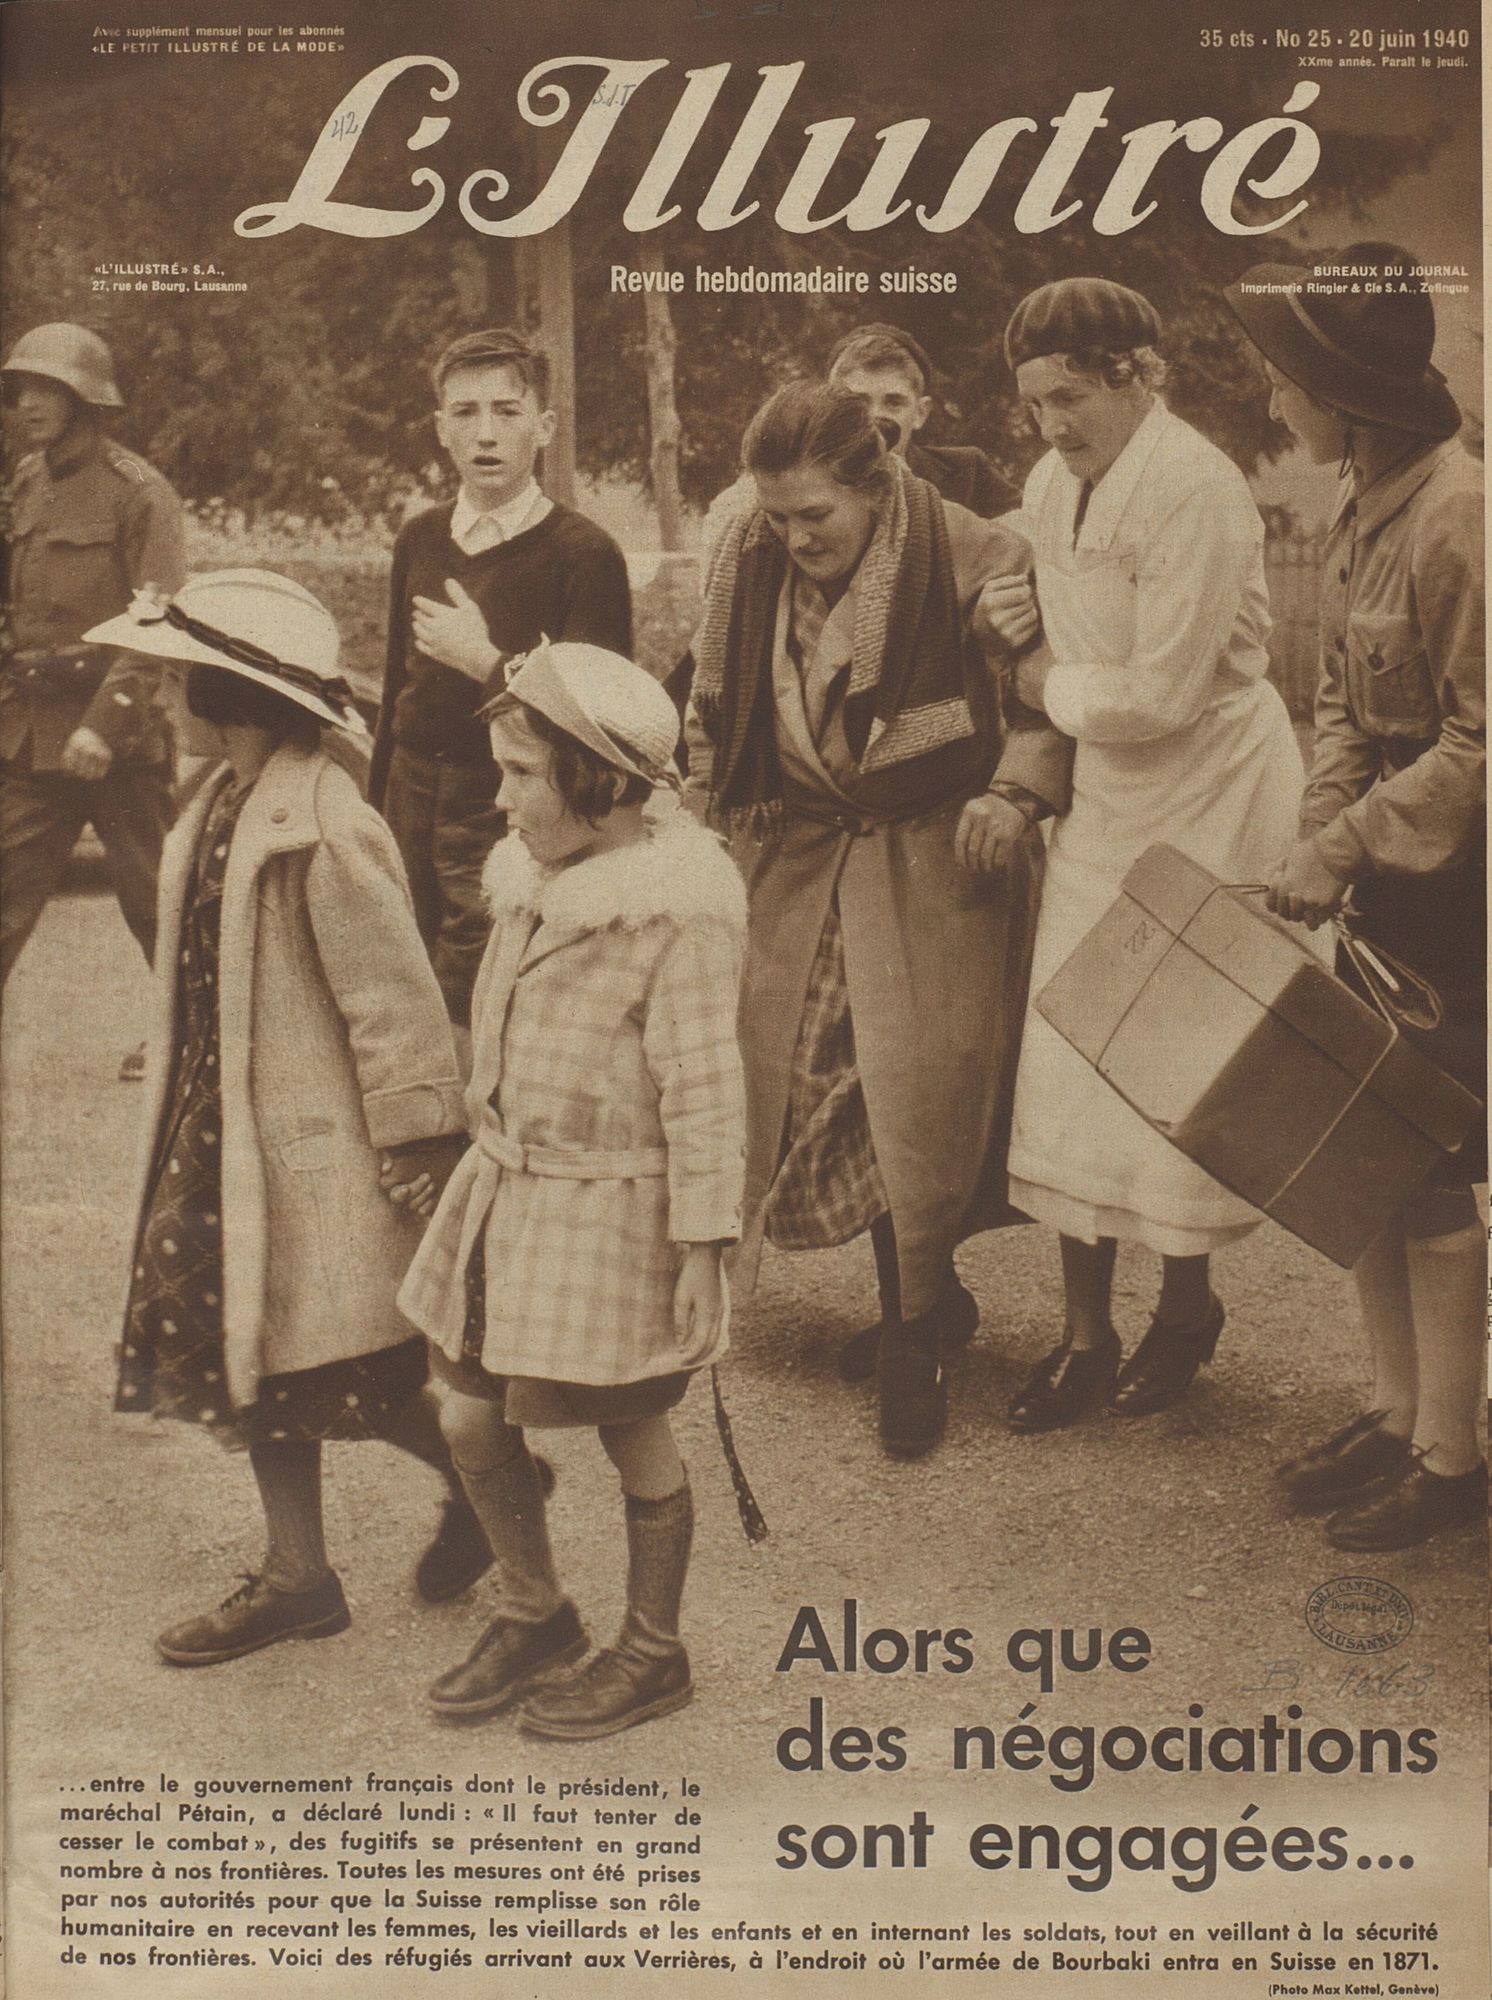 La couverture de "L'Illustré" du 20 juin 1940.